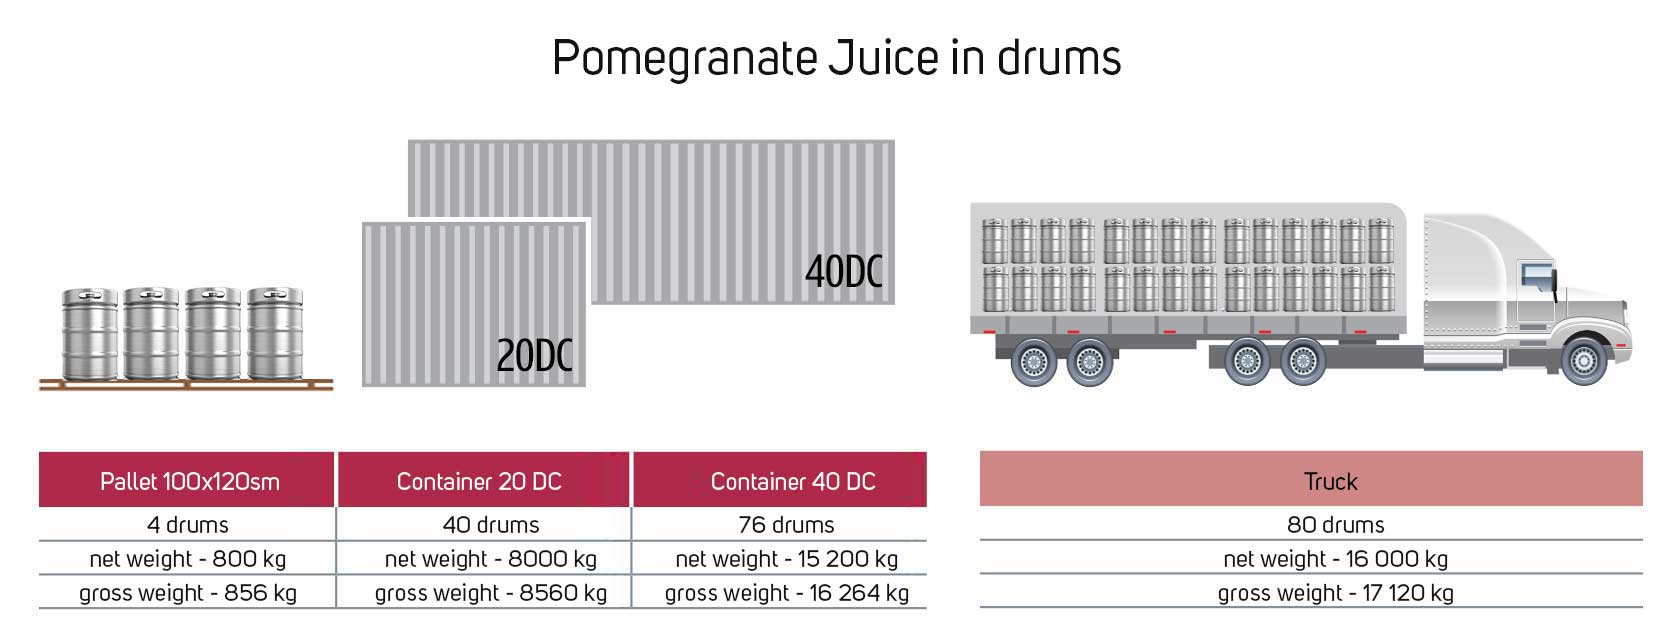 Pomegranate-Juice-drums